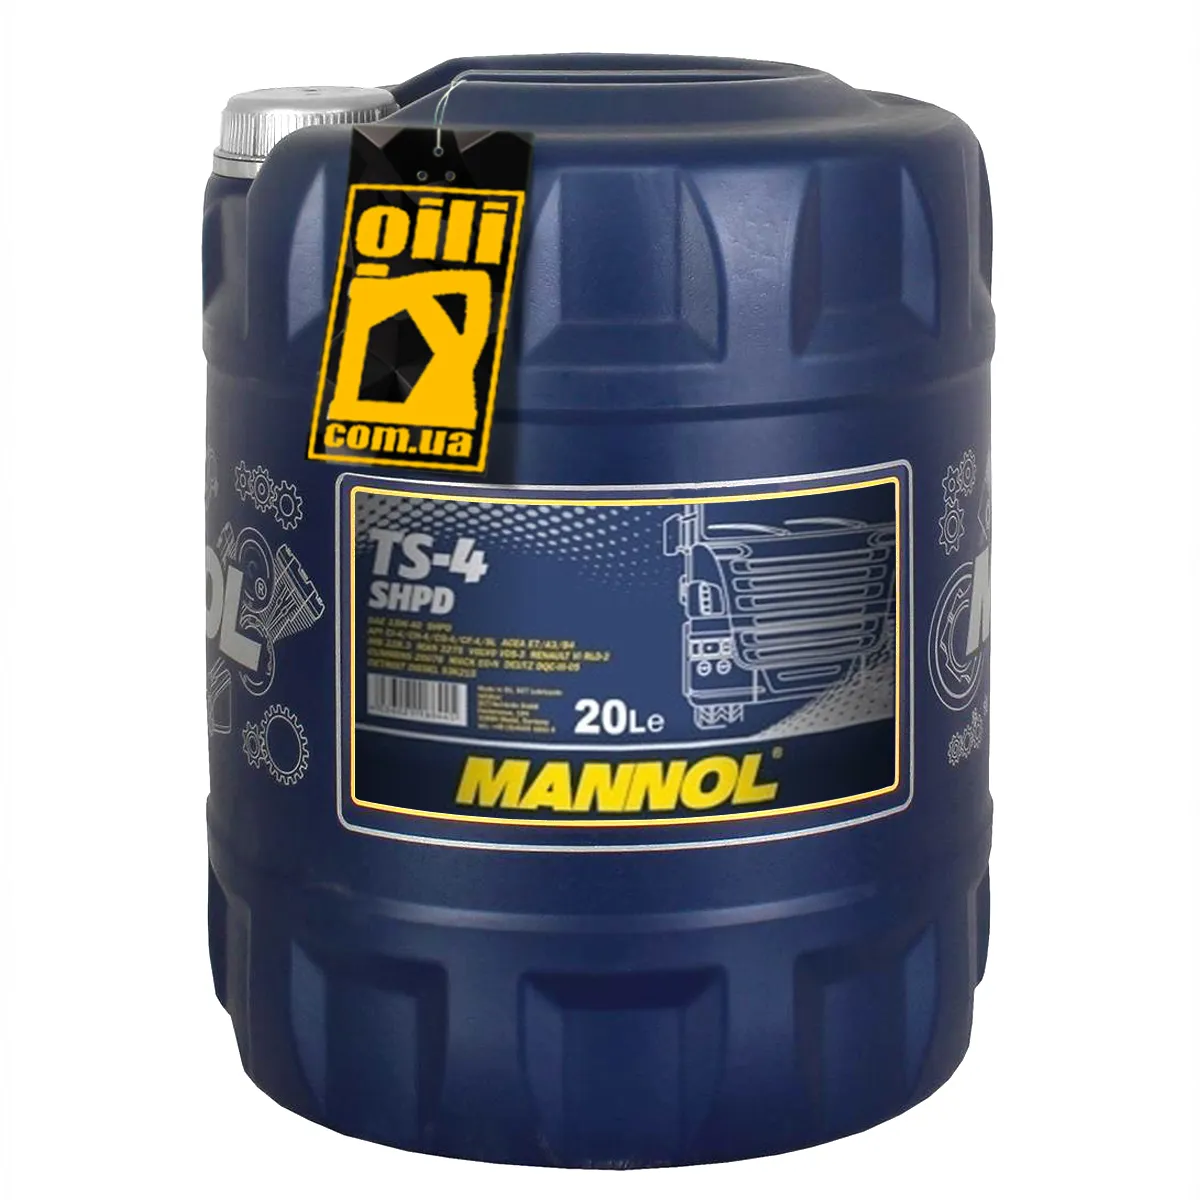 Моторное масло Mannol TS-4  15w40 SHPD  API CI-4/CH-4/CG-4/CF-4/CF/SL 20 л#2